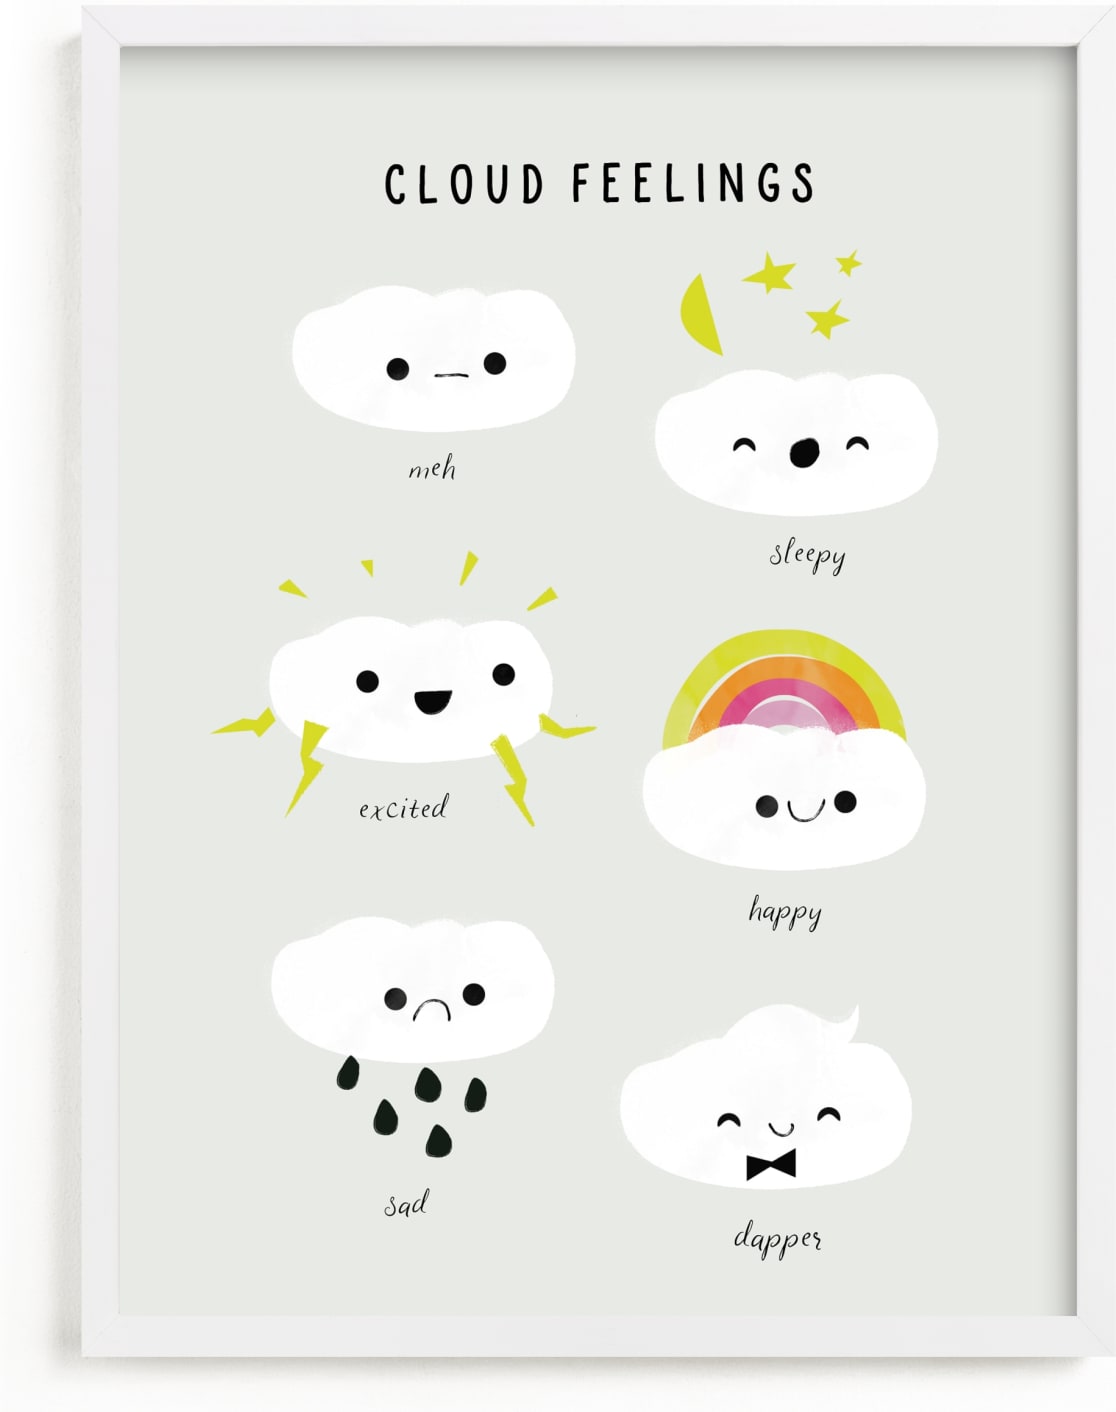 This is a grey nursery wall art by Lori Wemple called Cloud Feelings.